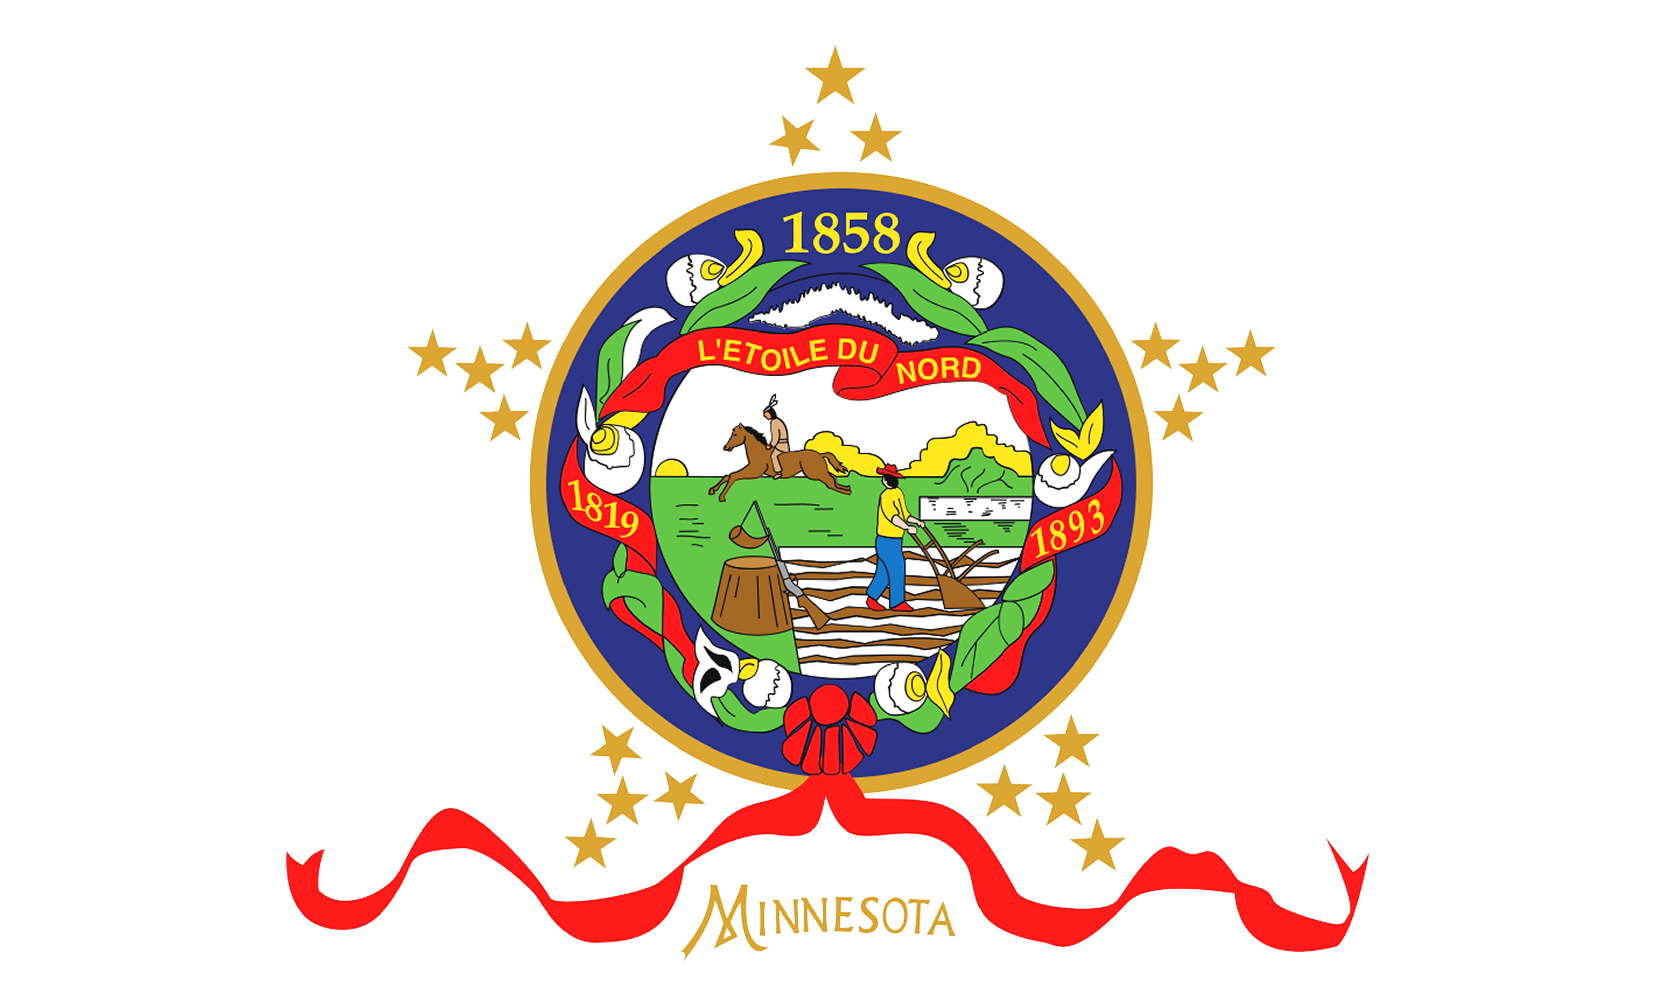 The Flag of Minnesota - Original